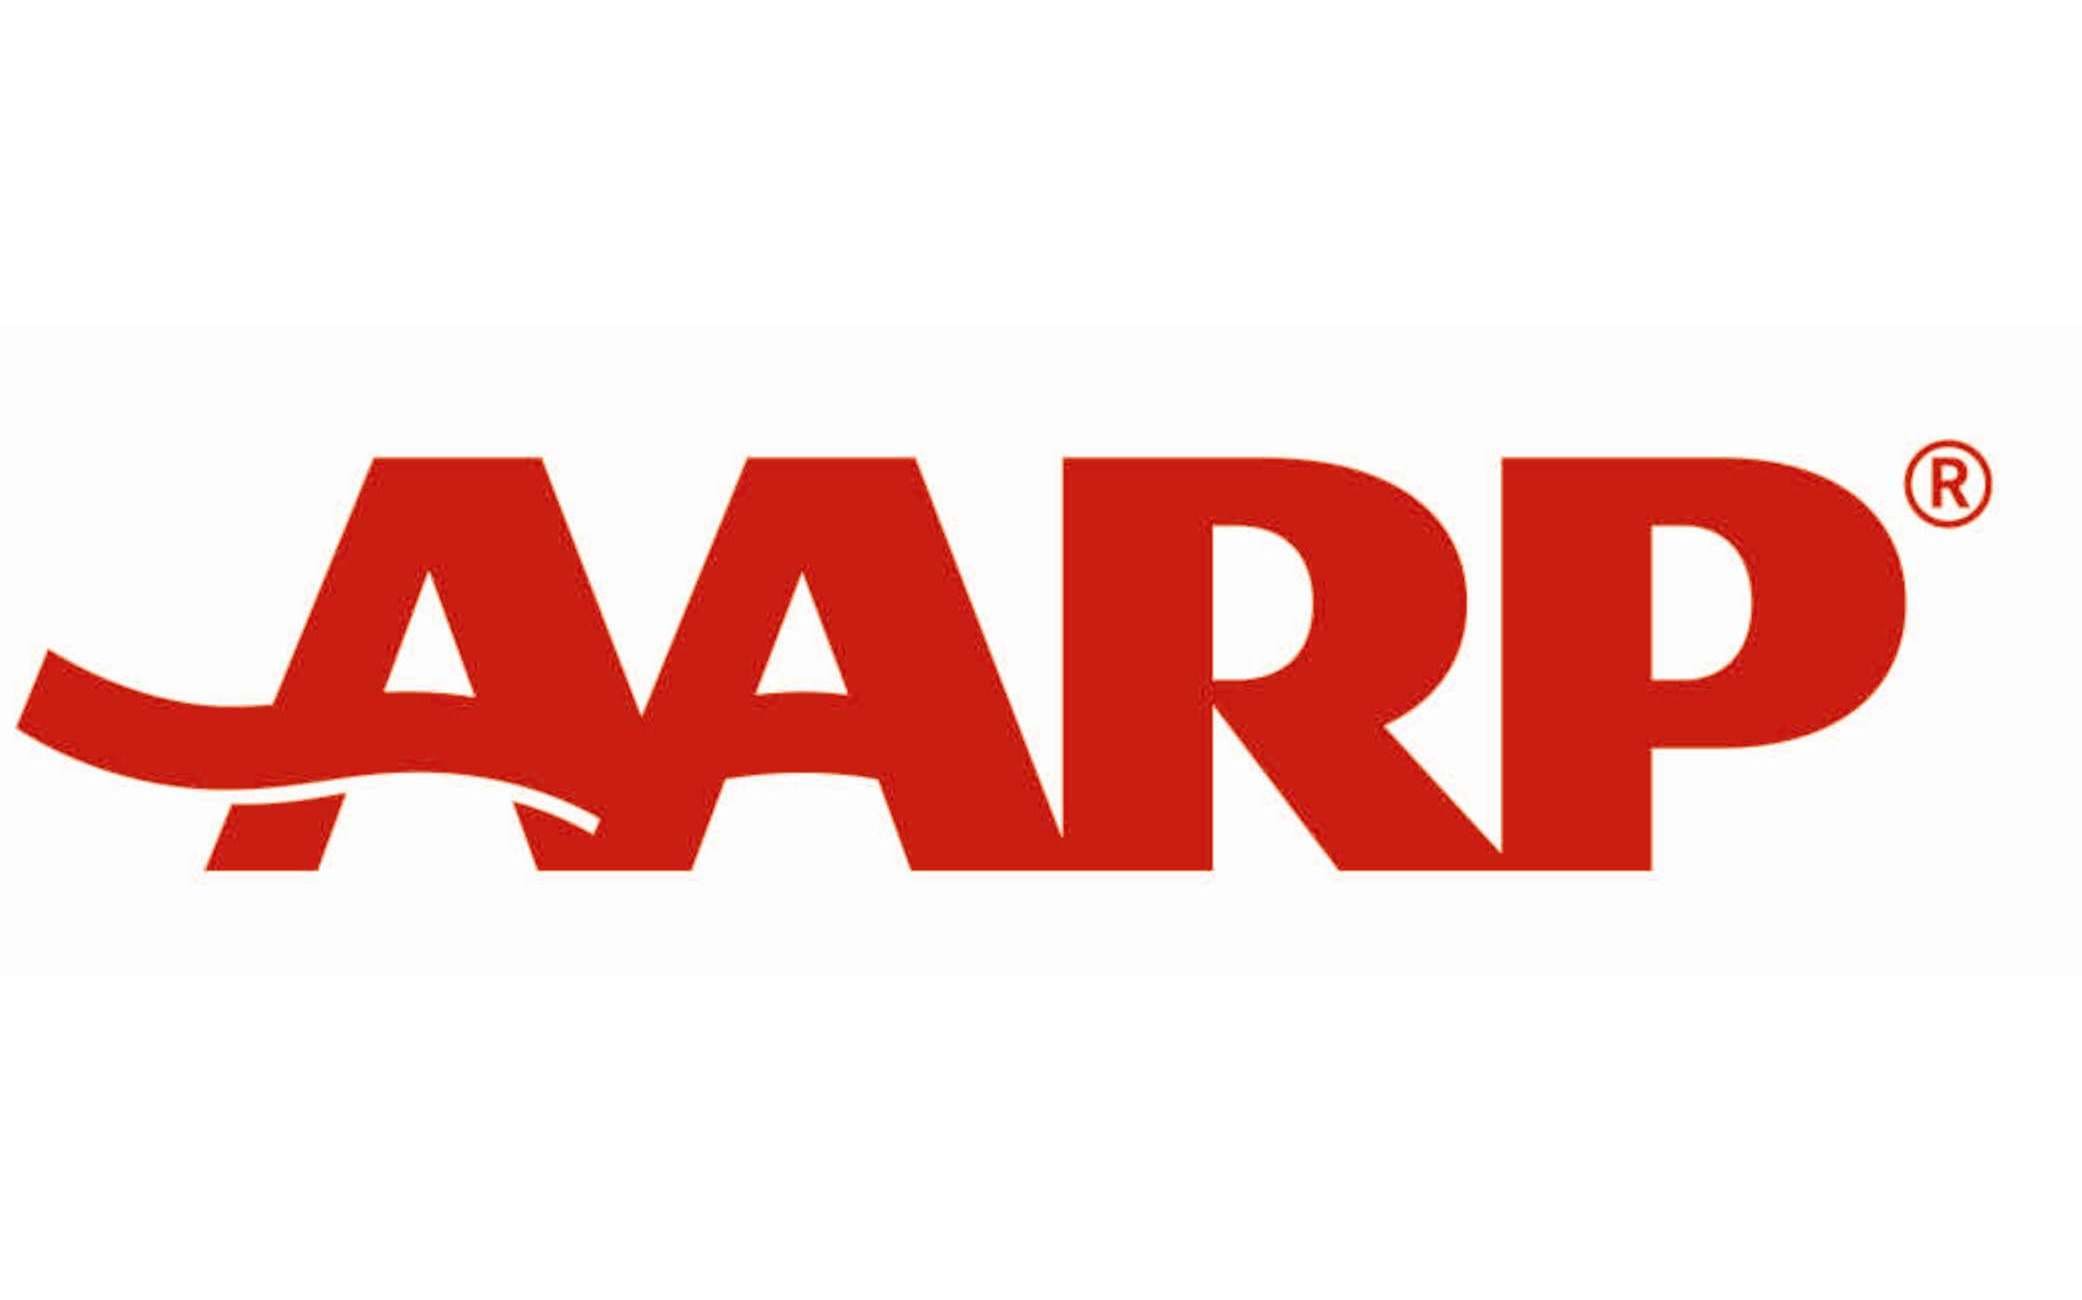 https://prismocean.com/wp-content/uploads/2022/06/AARP-logo.jpg